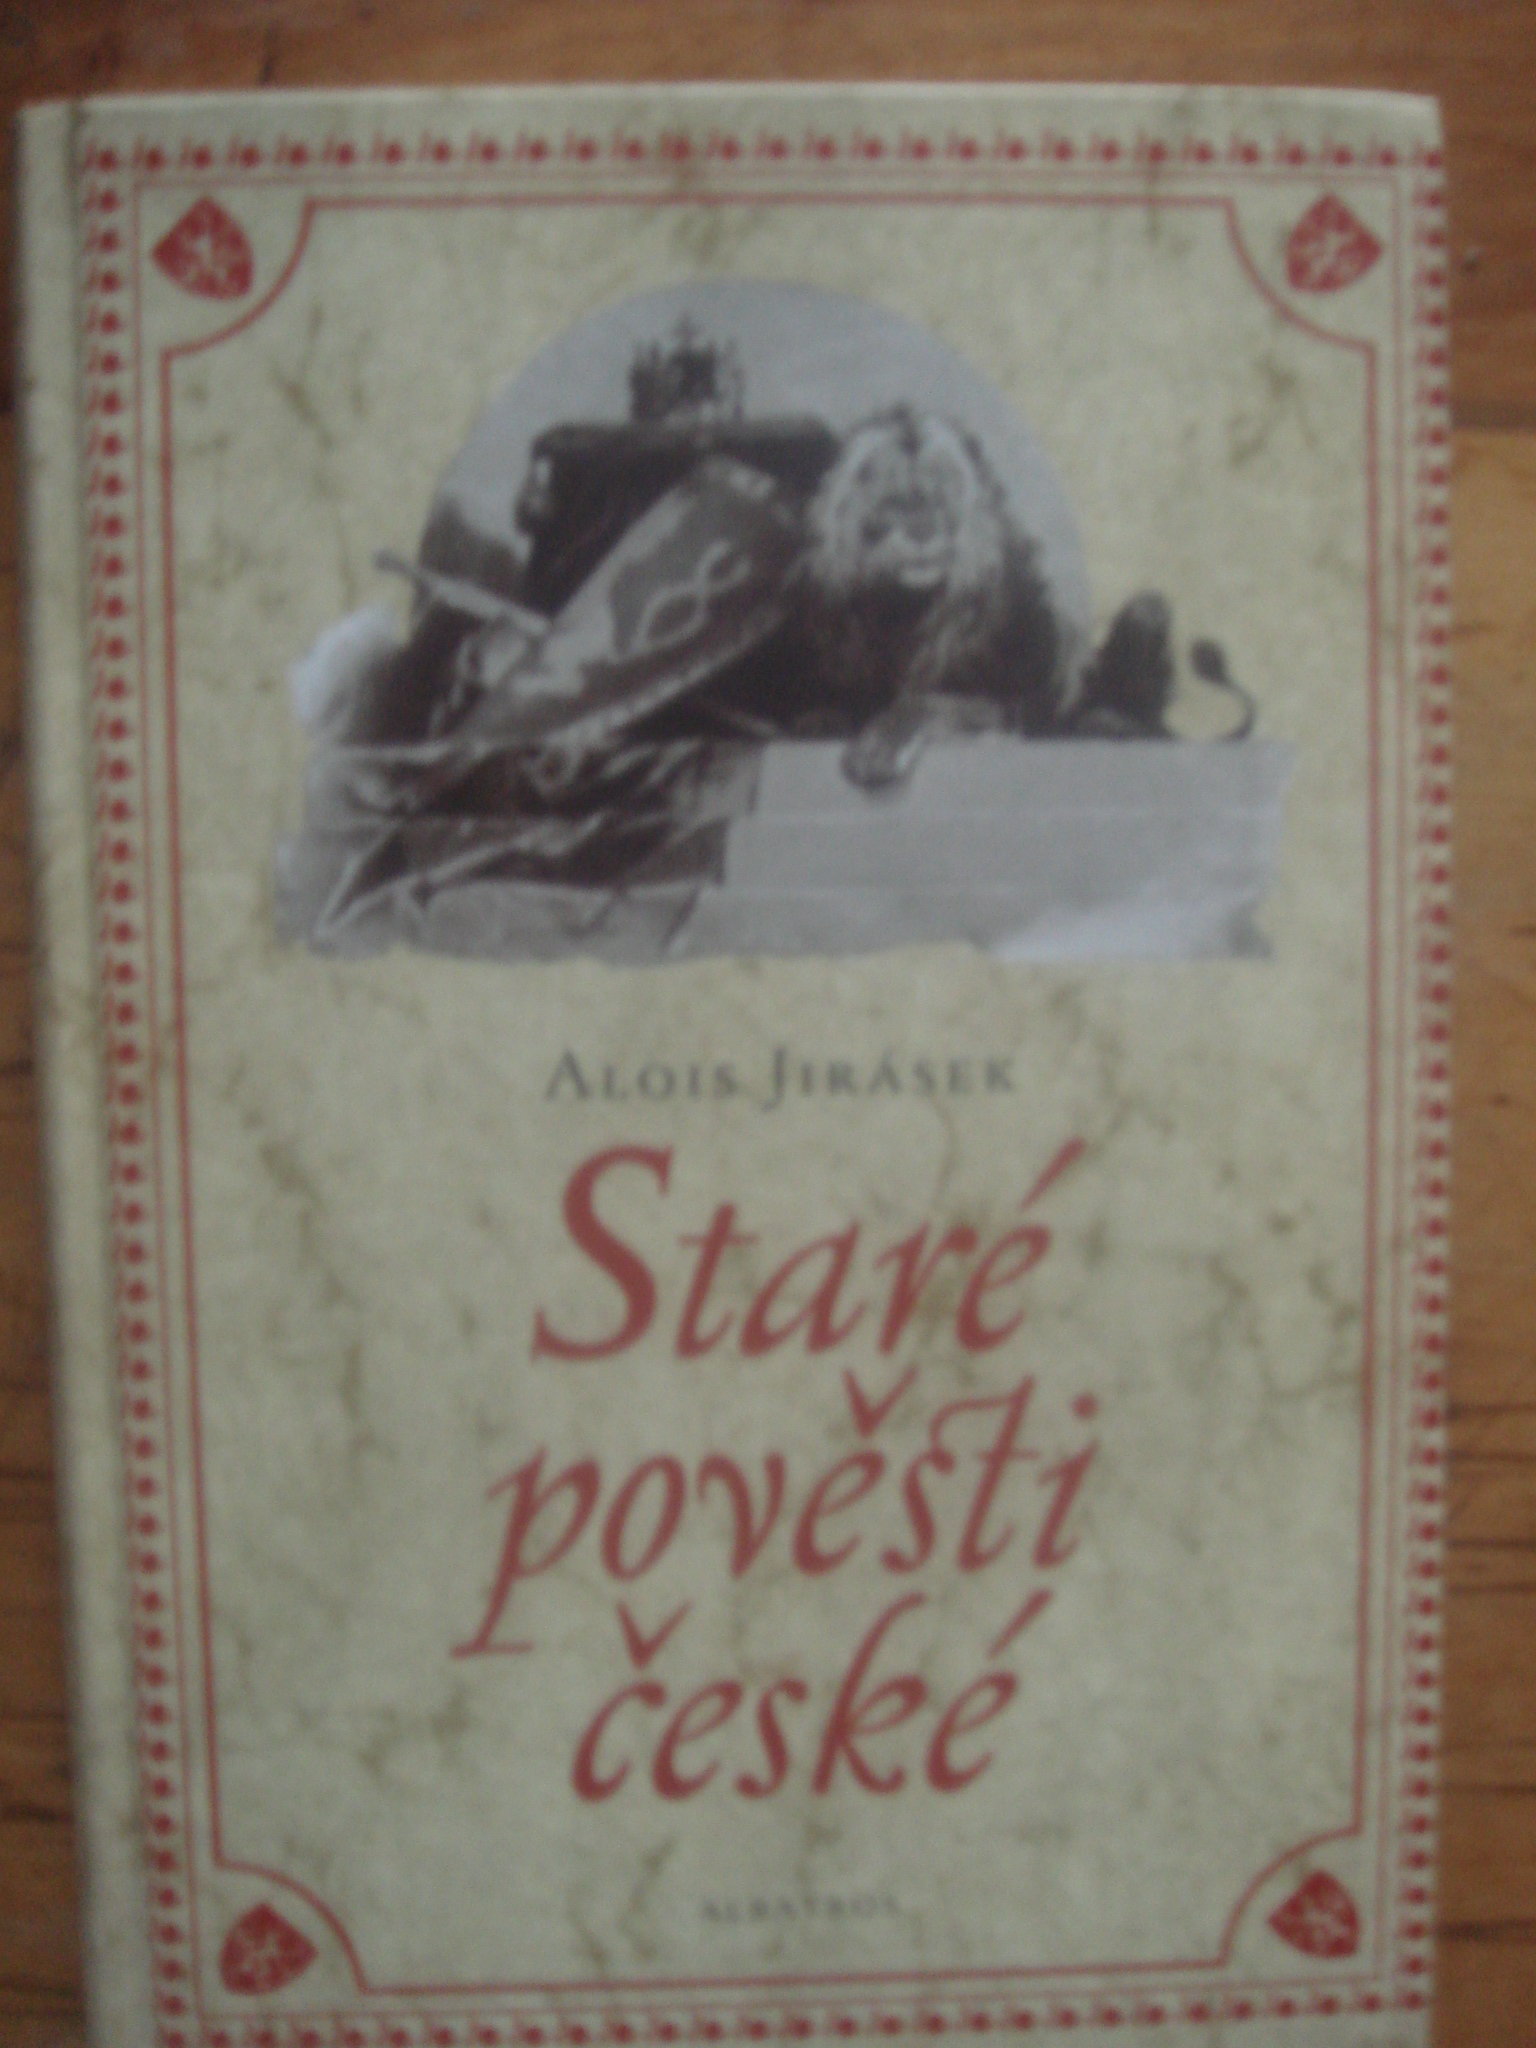 zobrazit detail knihy Jirsek, Alois: Star povsti esk 2008